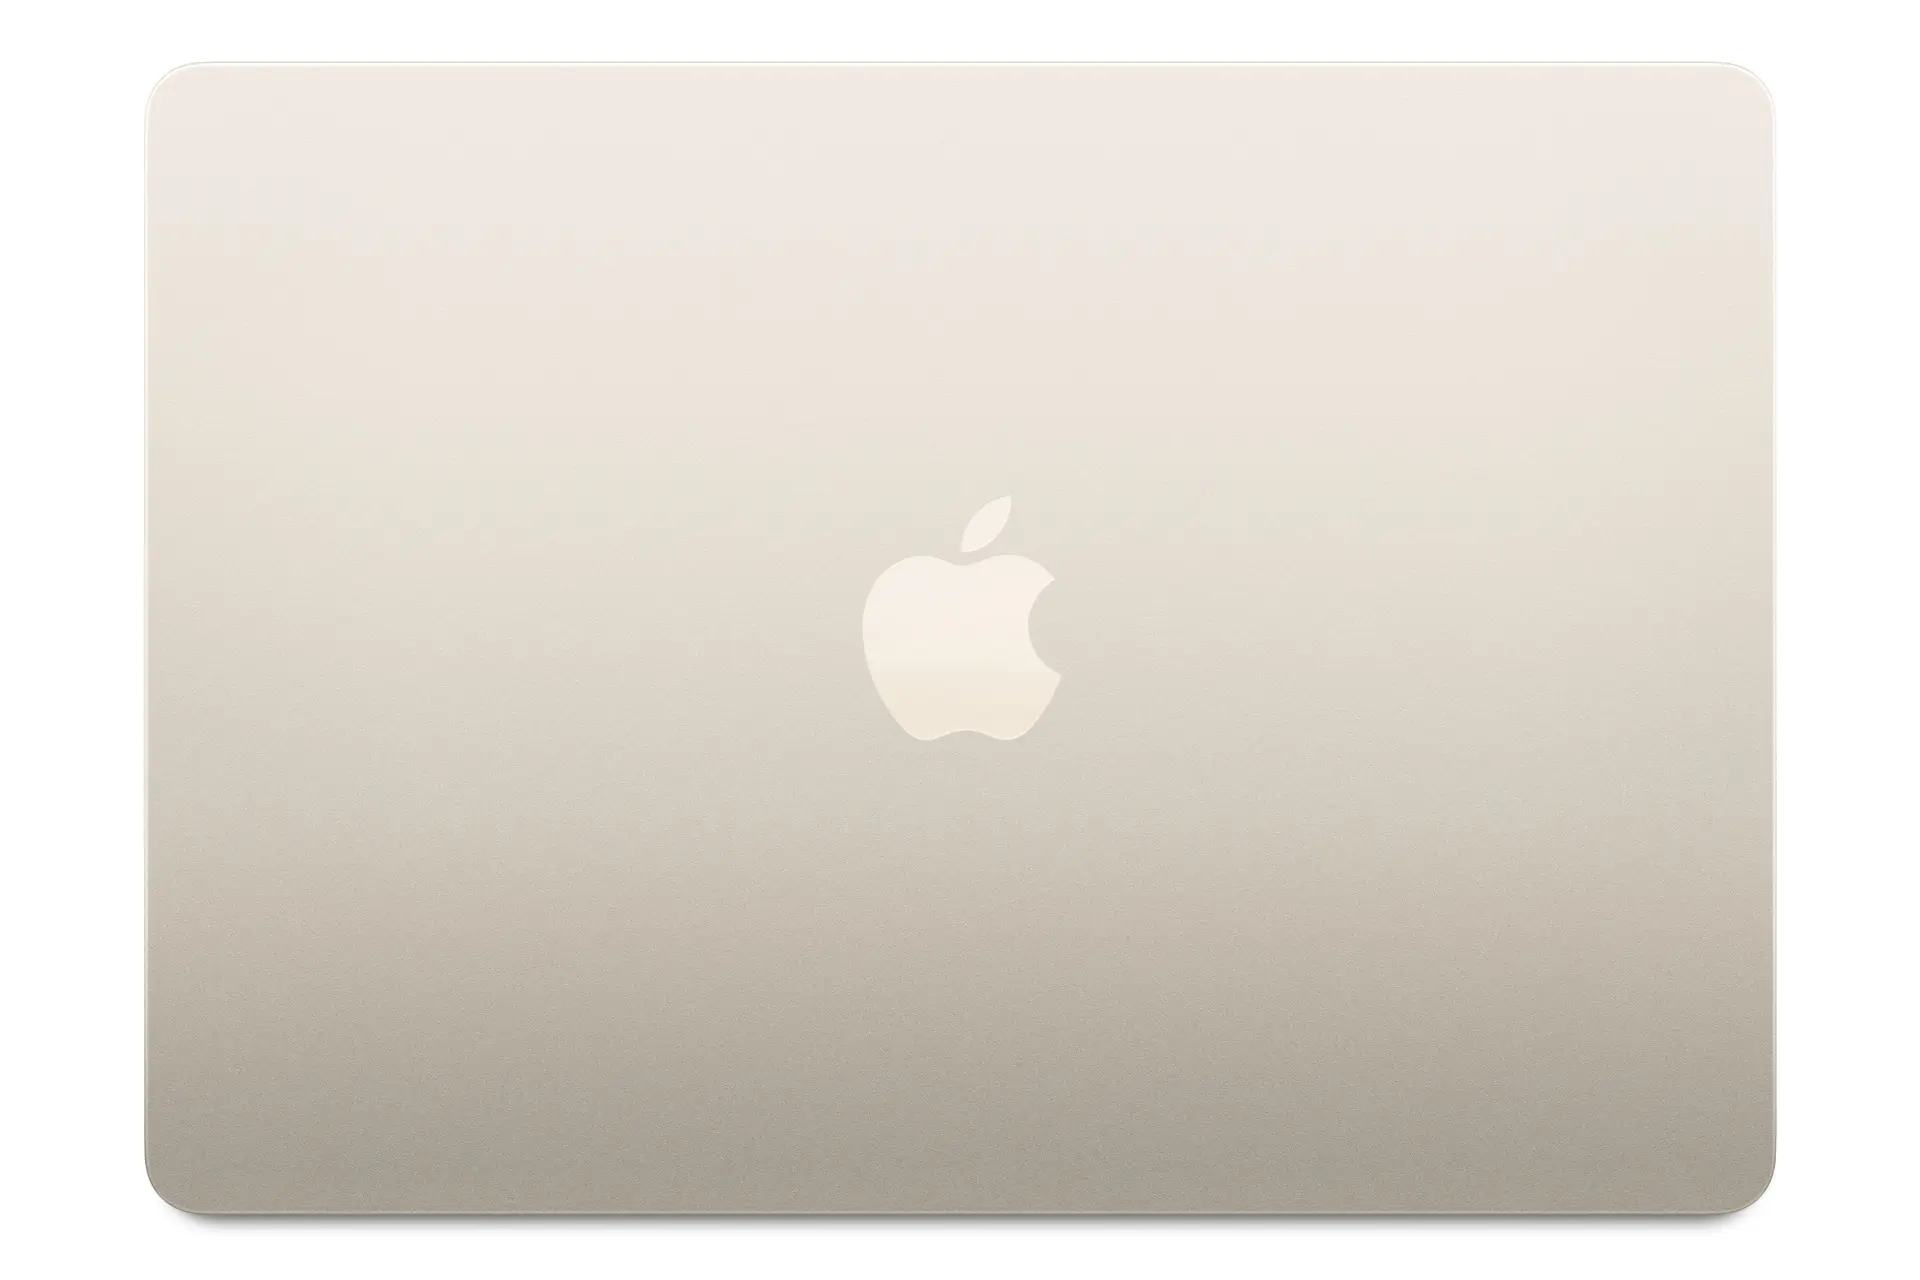 نمای بالا مک بوک ایر 13 اینچی M3 اپل طلایی / Apple MacBook Air M3